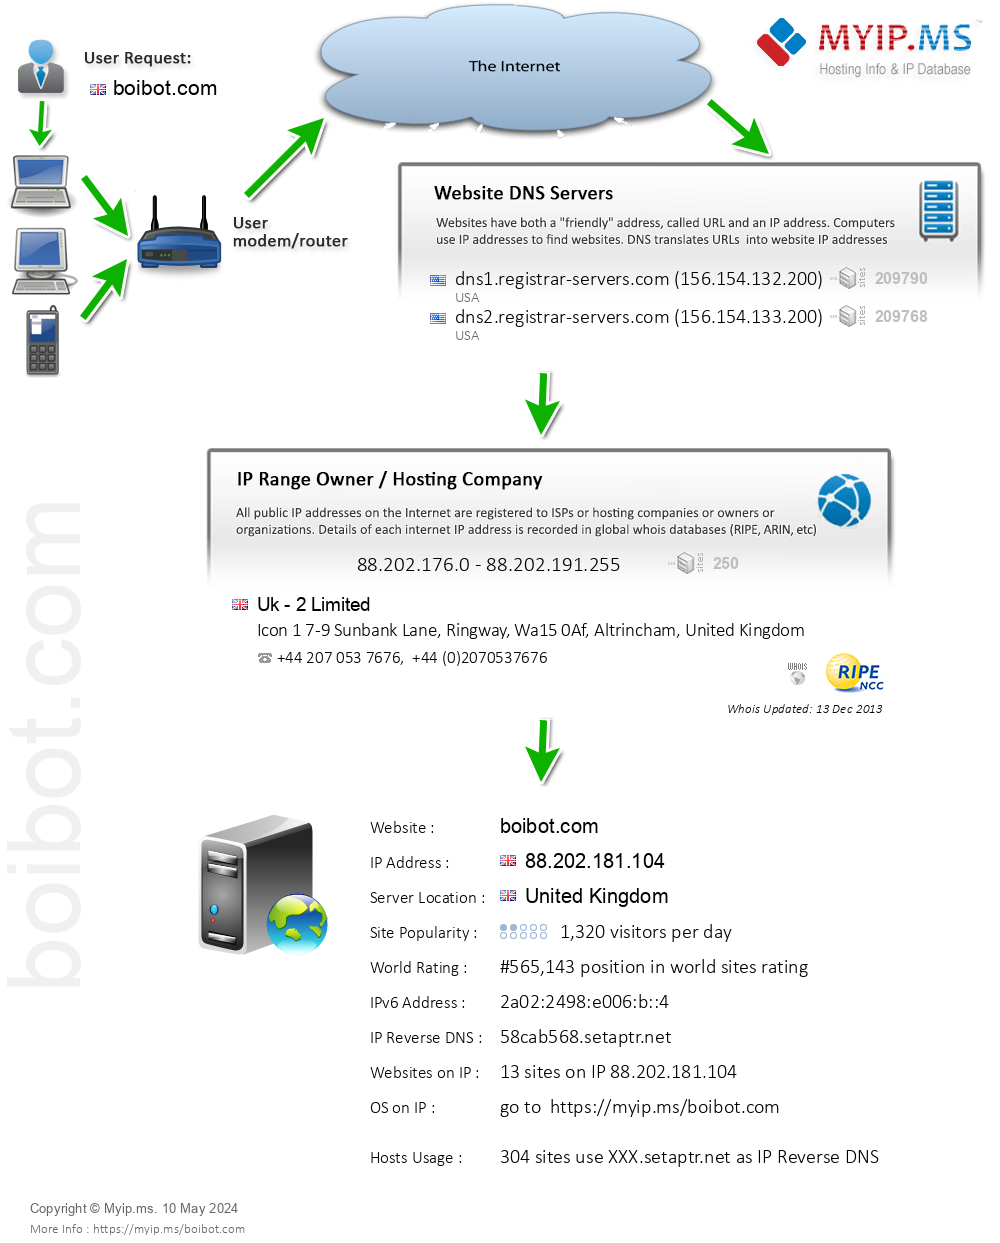 Boibot.com - Website Hosting Visual IP Diagram